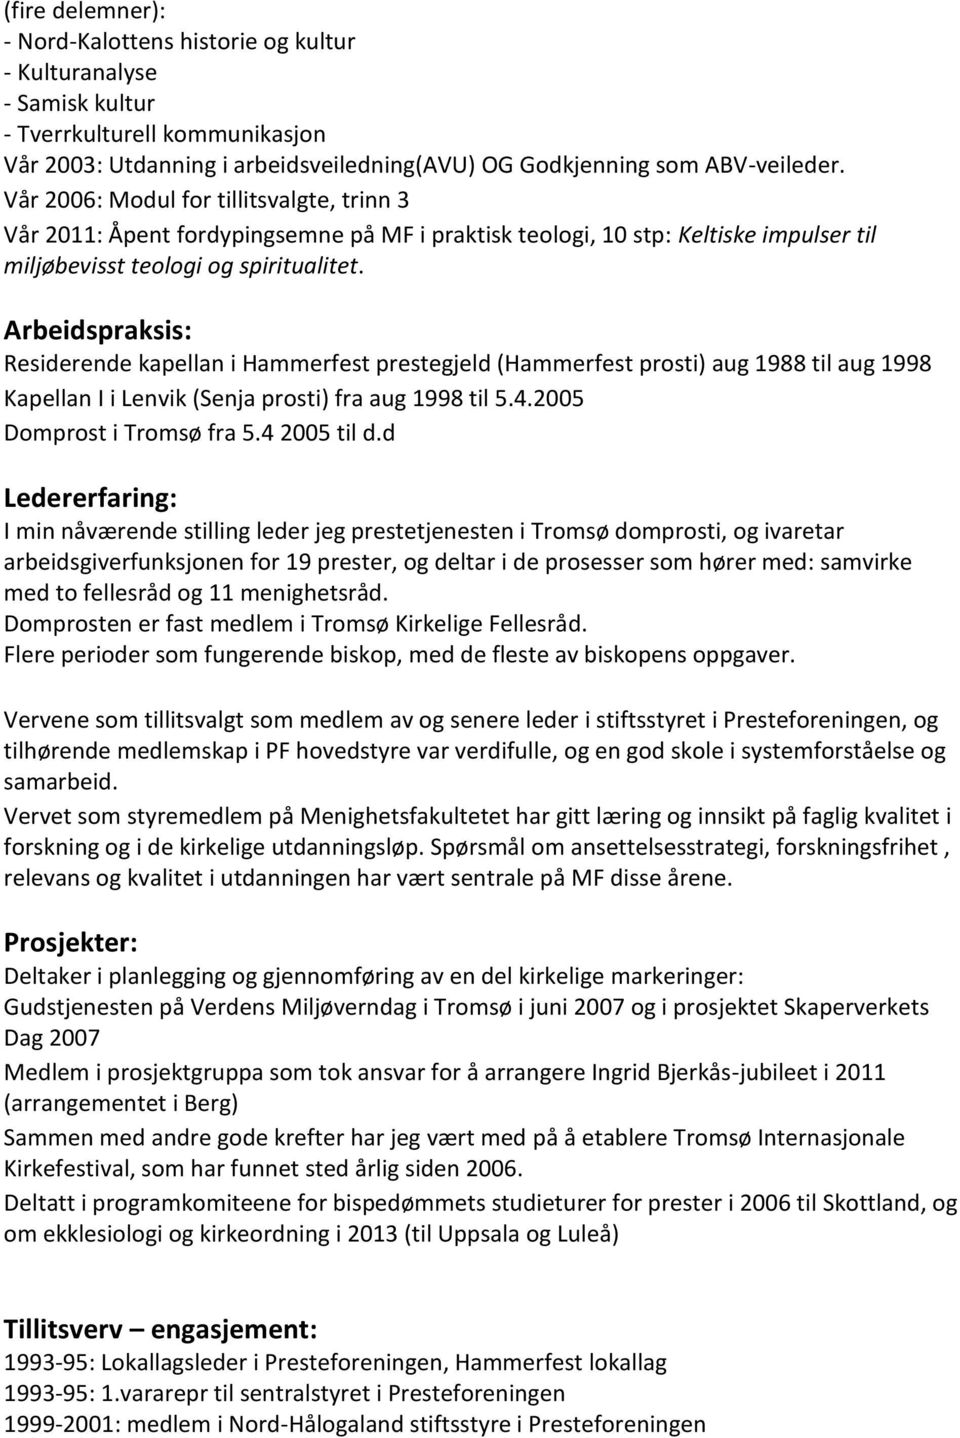 Arbeidspraksis: Residerende kapellan i Hammerfest prestegjeld (Hammerfest prosti) aug 1988 til aug 1998 Kapellan I i Lenvik (Senja prosti) fra aug 1998 til 5.4.2005 Domprost i Tromsø fra 5.